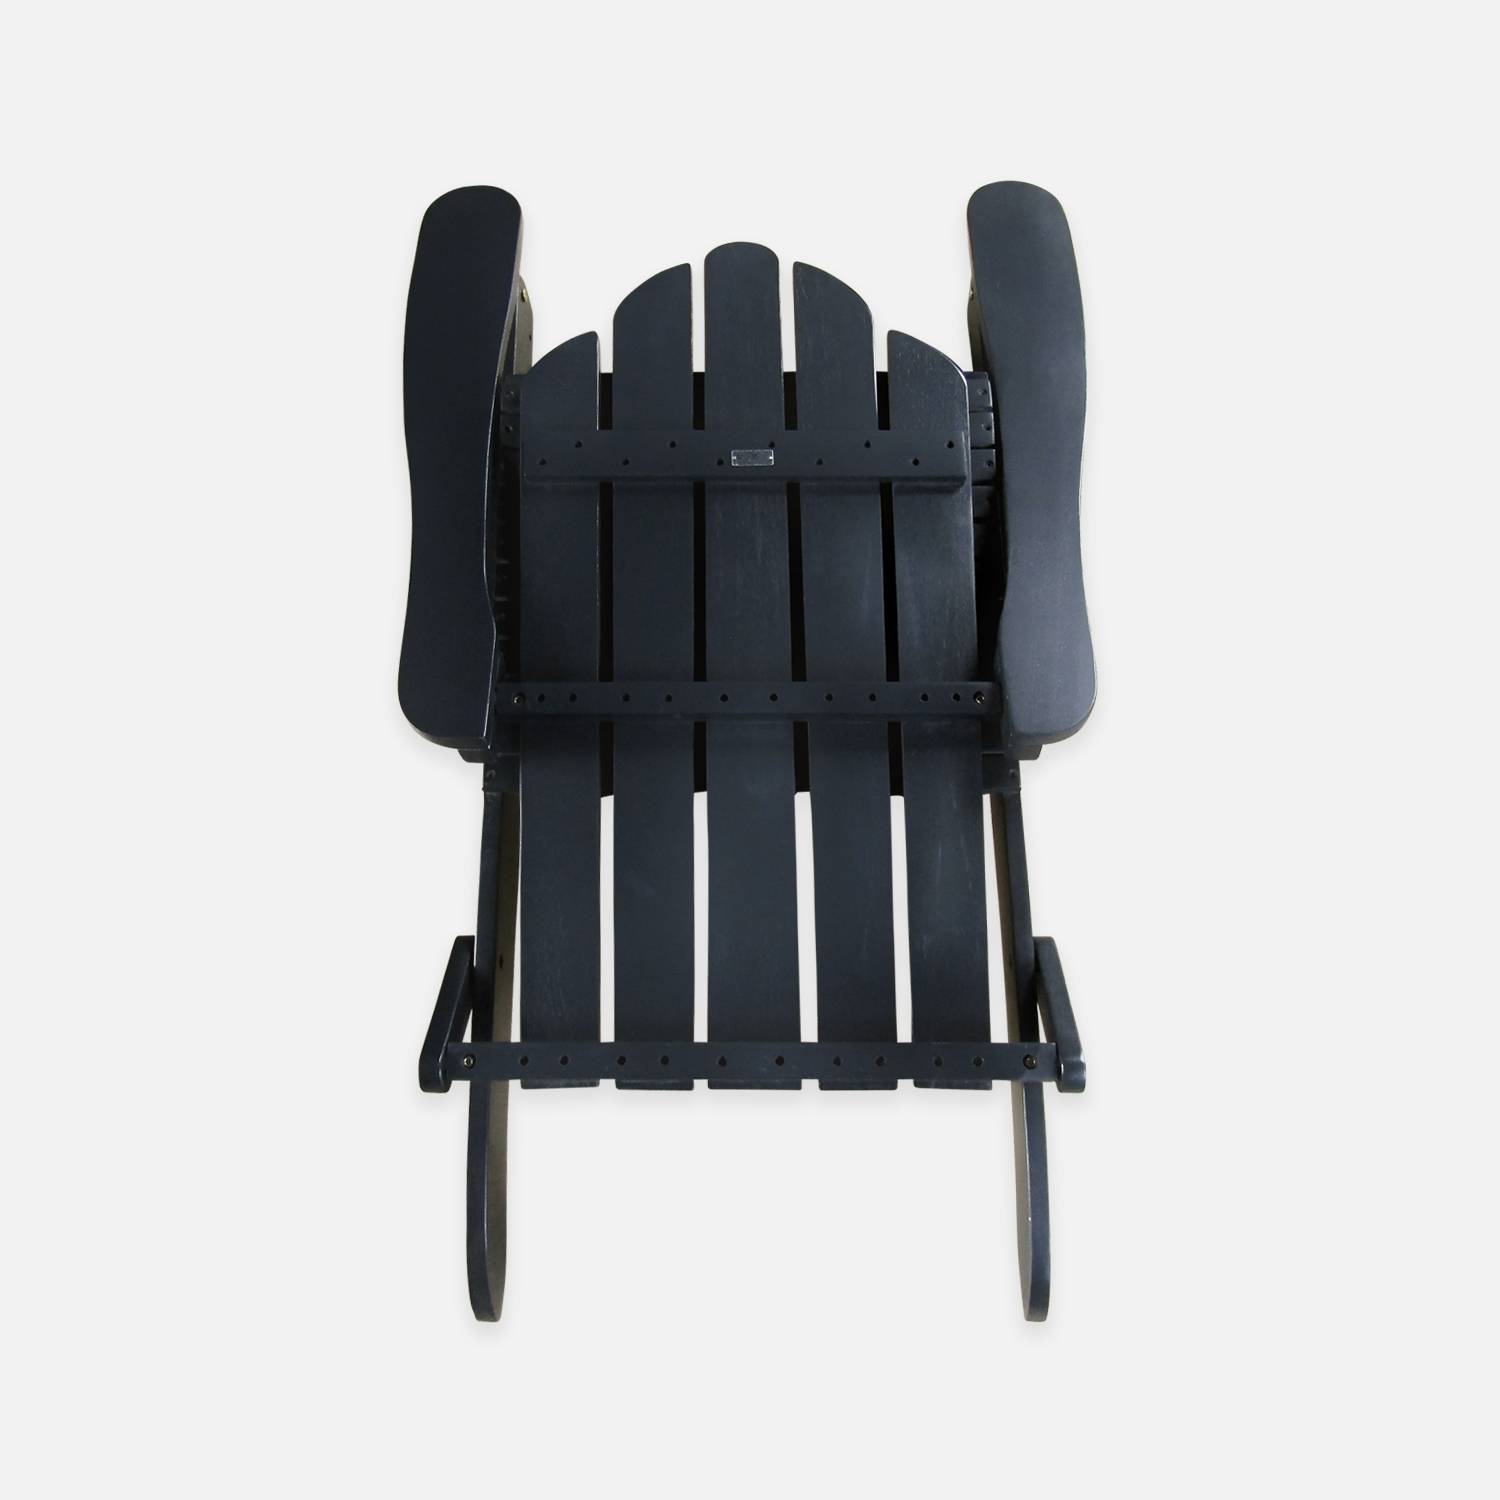 Foldable wooden retro garden armchair, black, W89 x D73.5 x H94cm Photo4